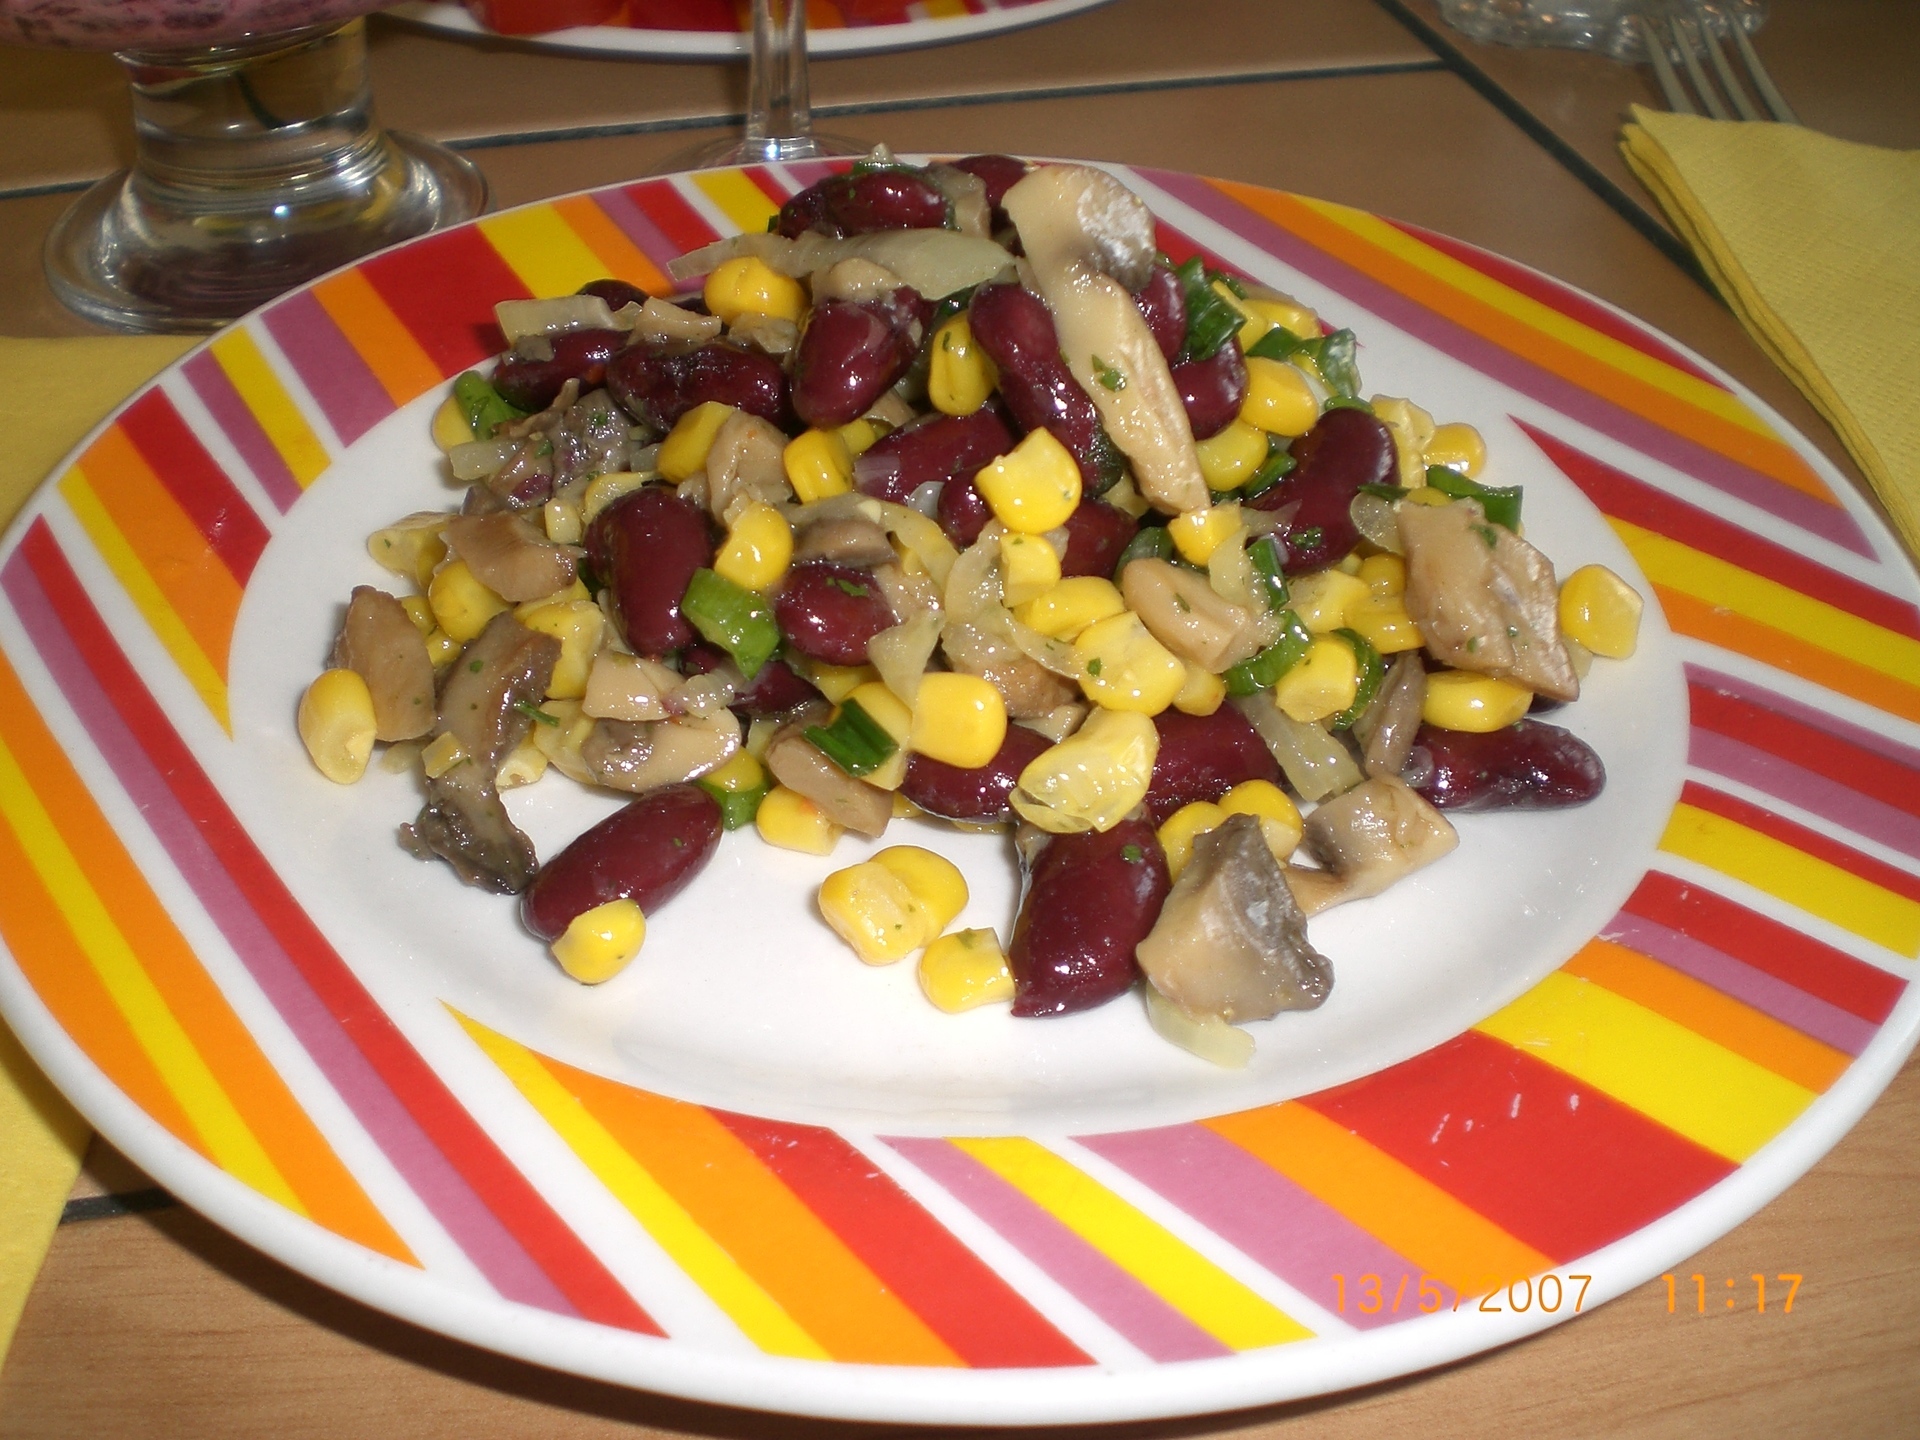 Салат с курицей, грибами и маринованными огурцами